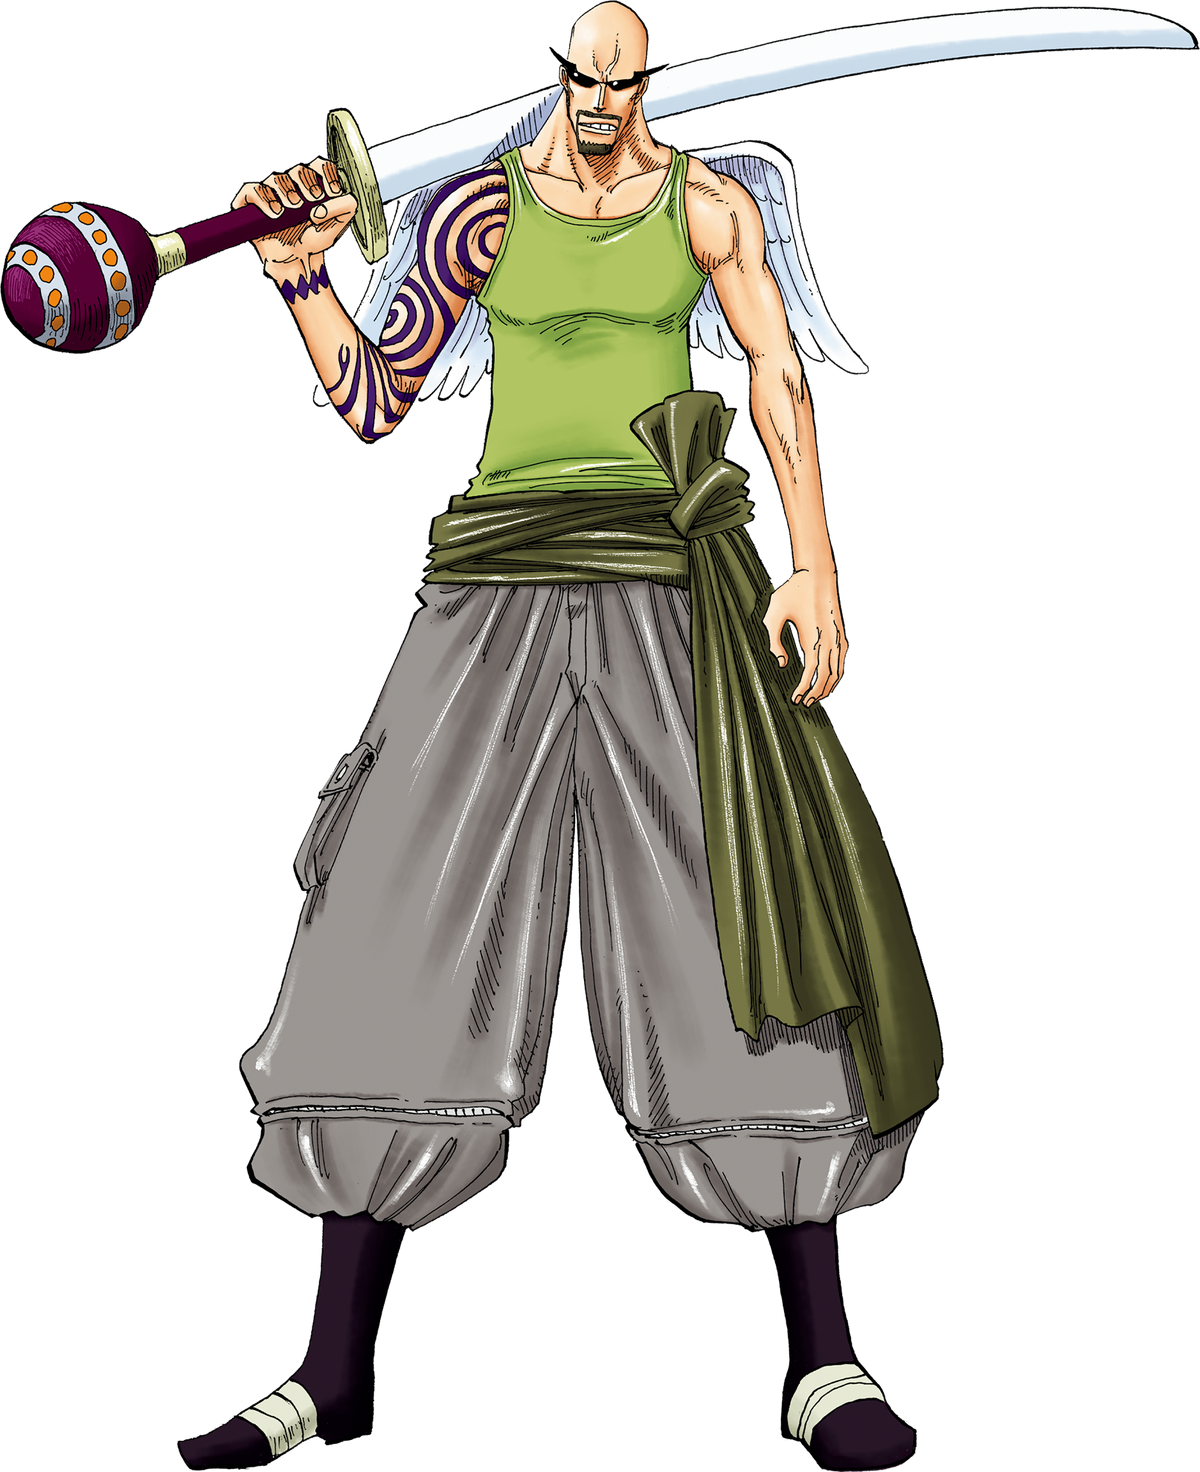 Rankyaku, One Piece Role-Play Wiki